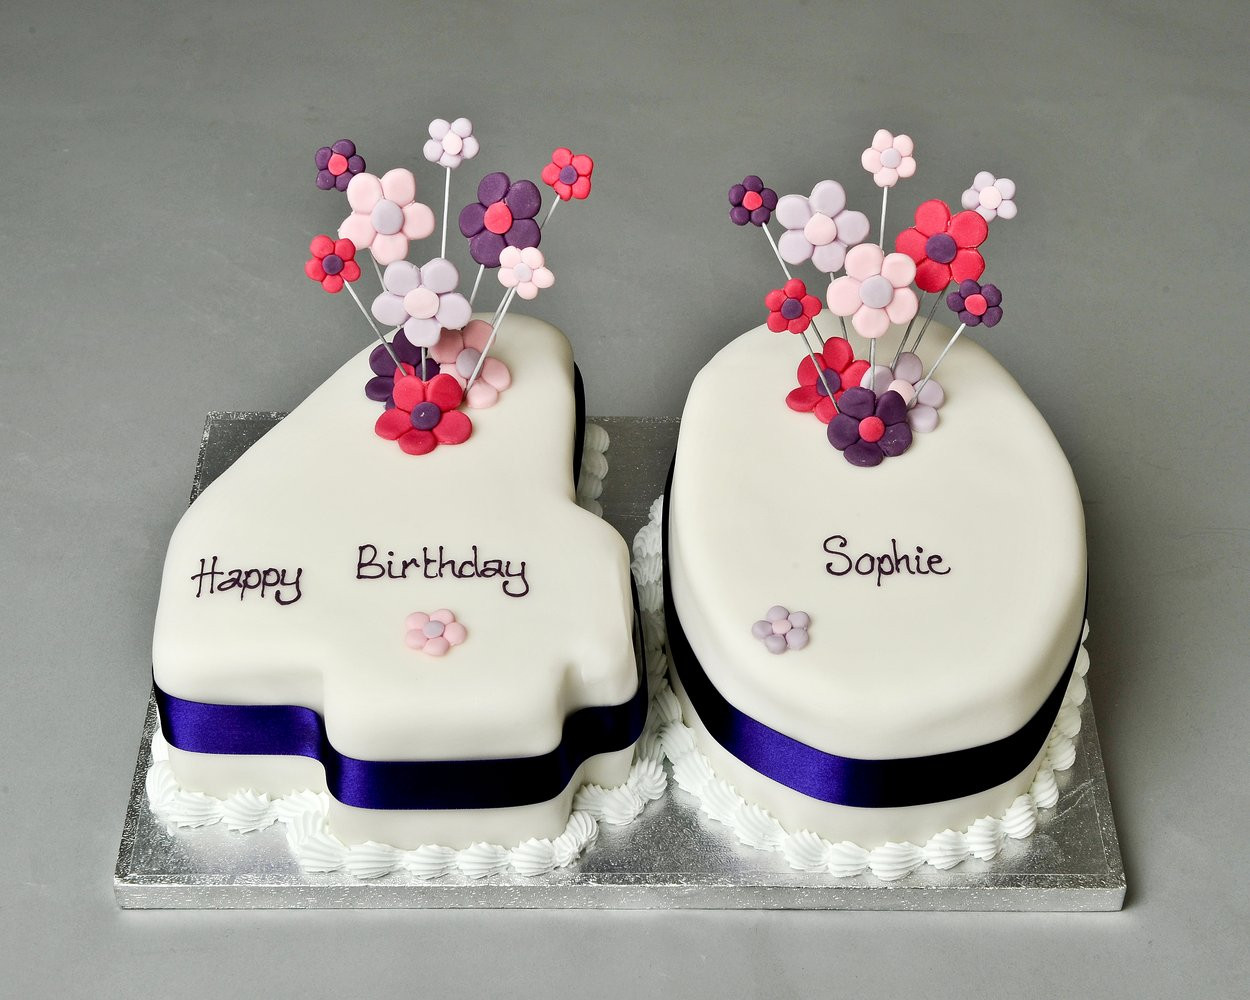 Birthday Cake Ideas For Women
 Women Birthday Cakes